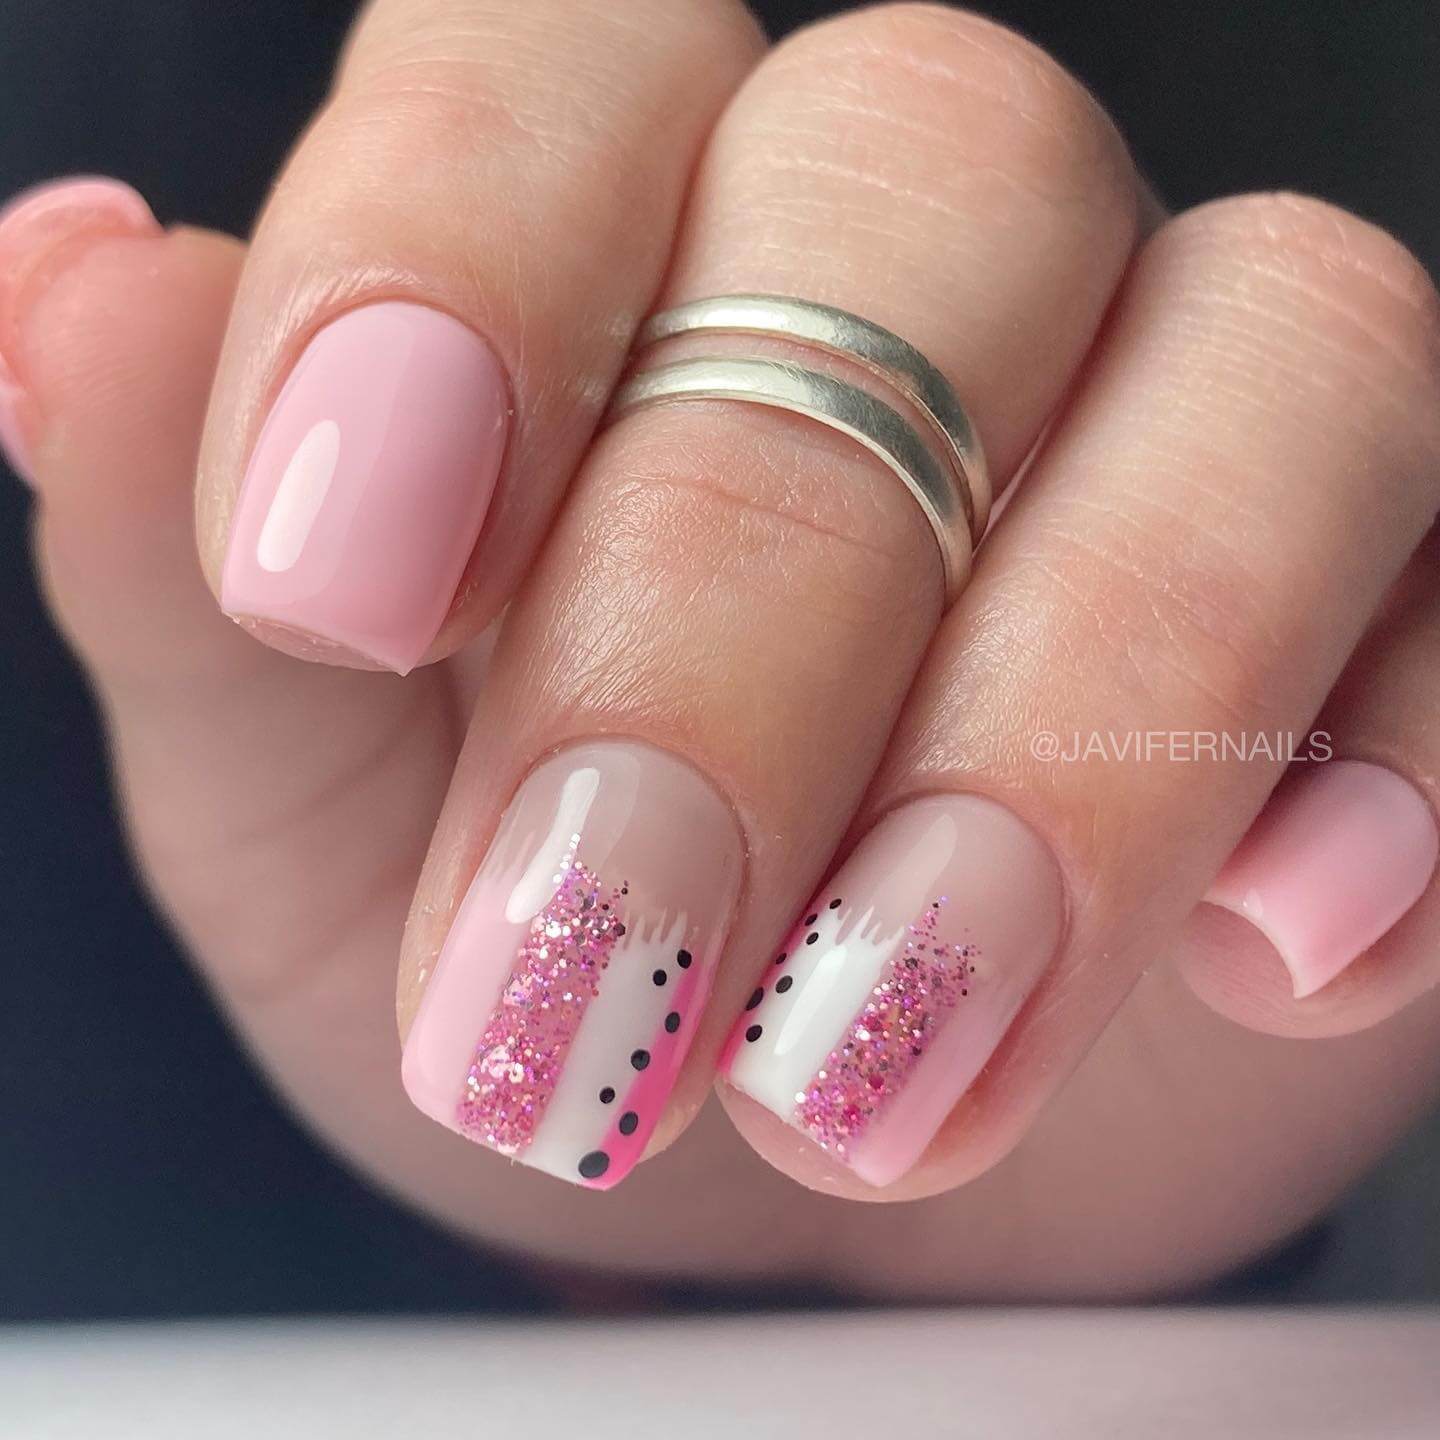 Short Pink Nails With Polka Dots